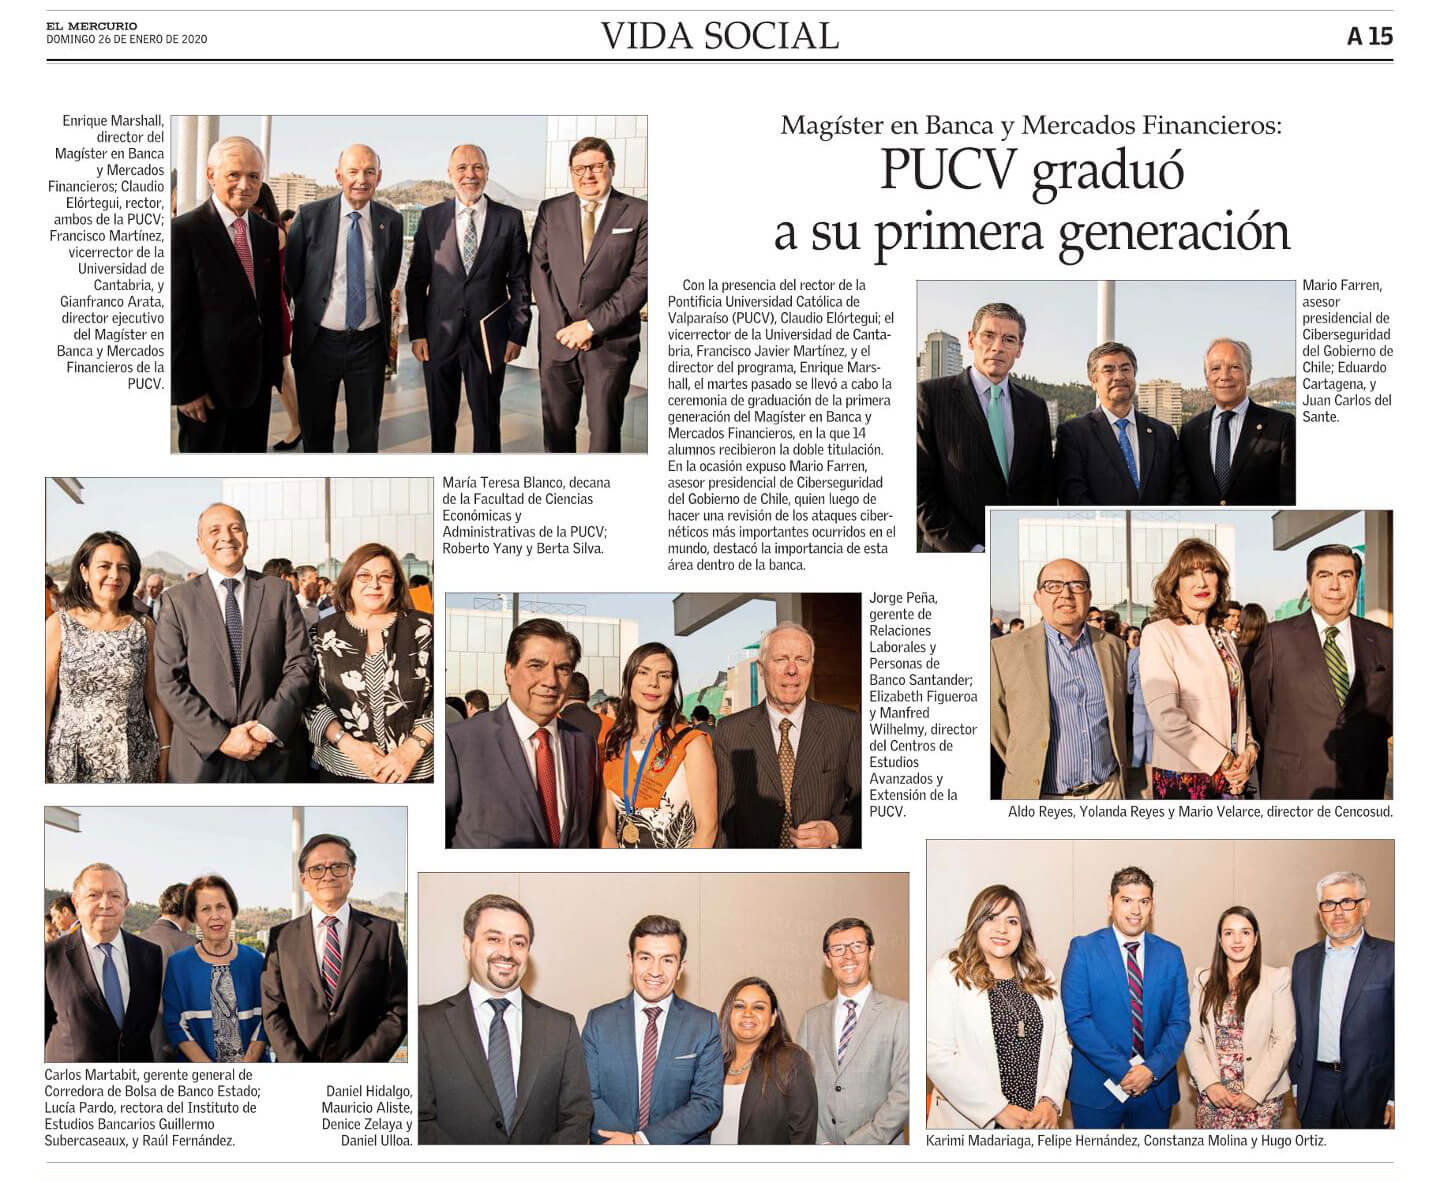 Magíster en Banca y Mercados Financieros: PUCV graduó a su primera generación